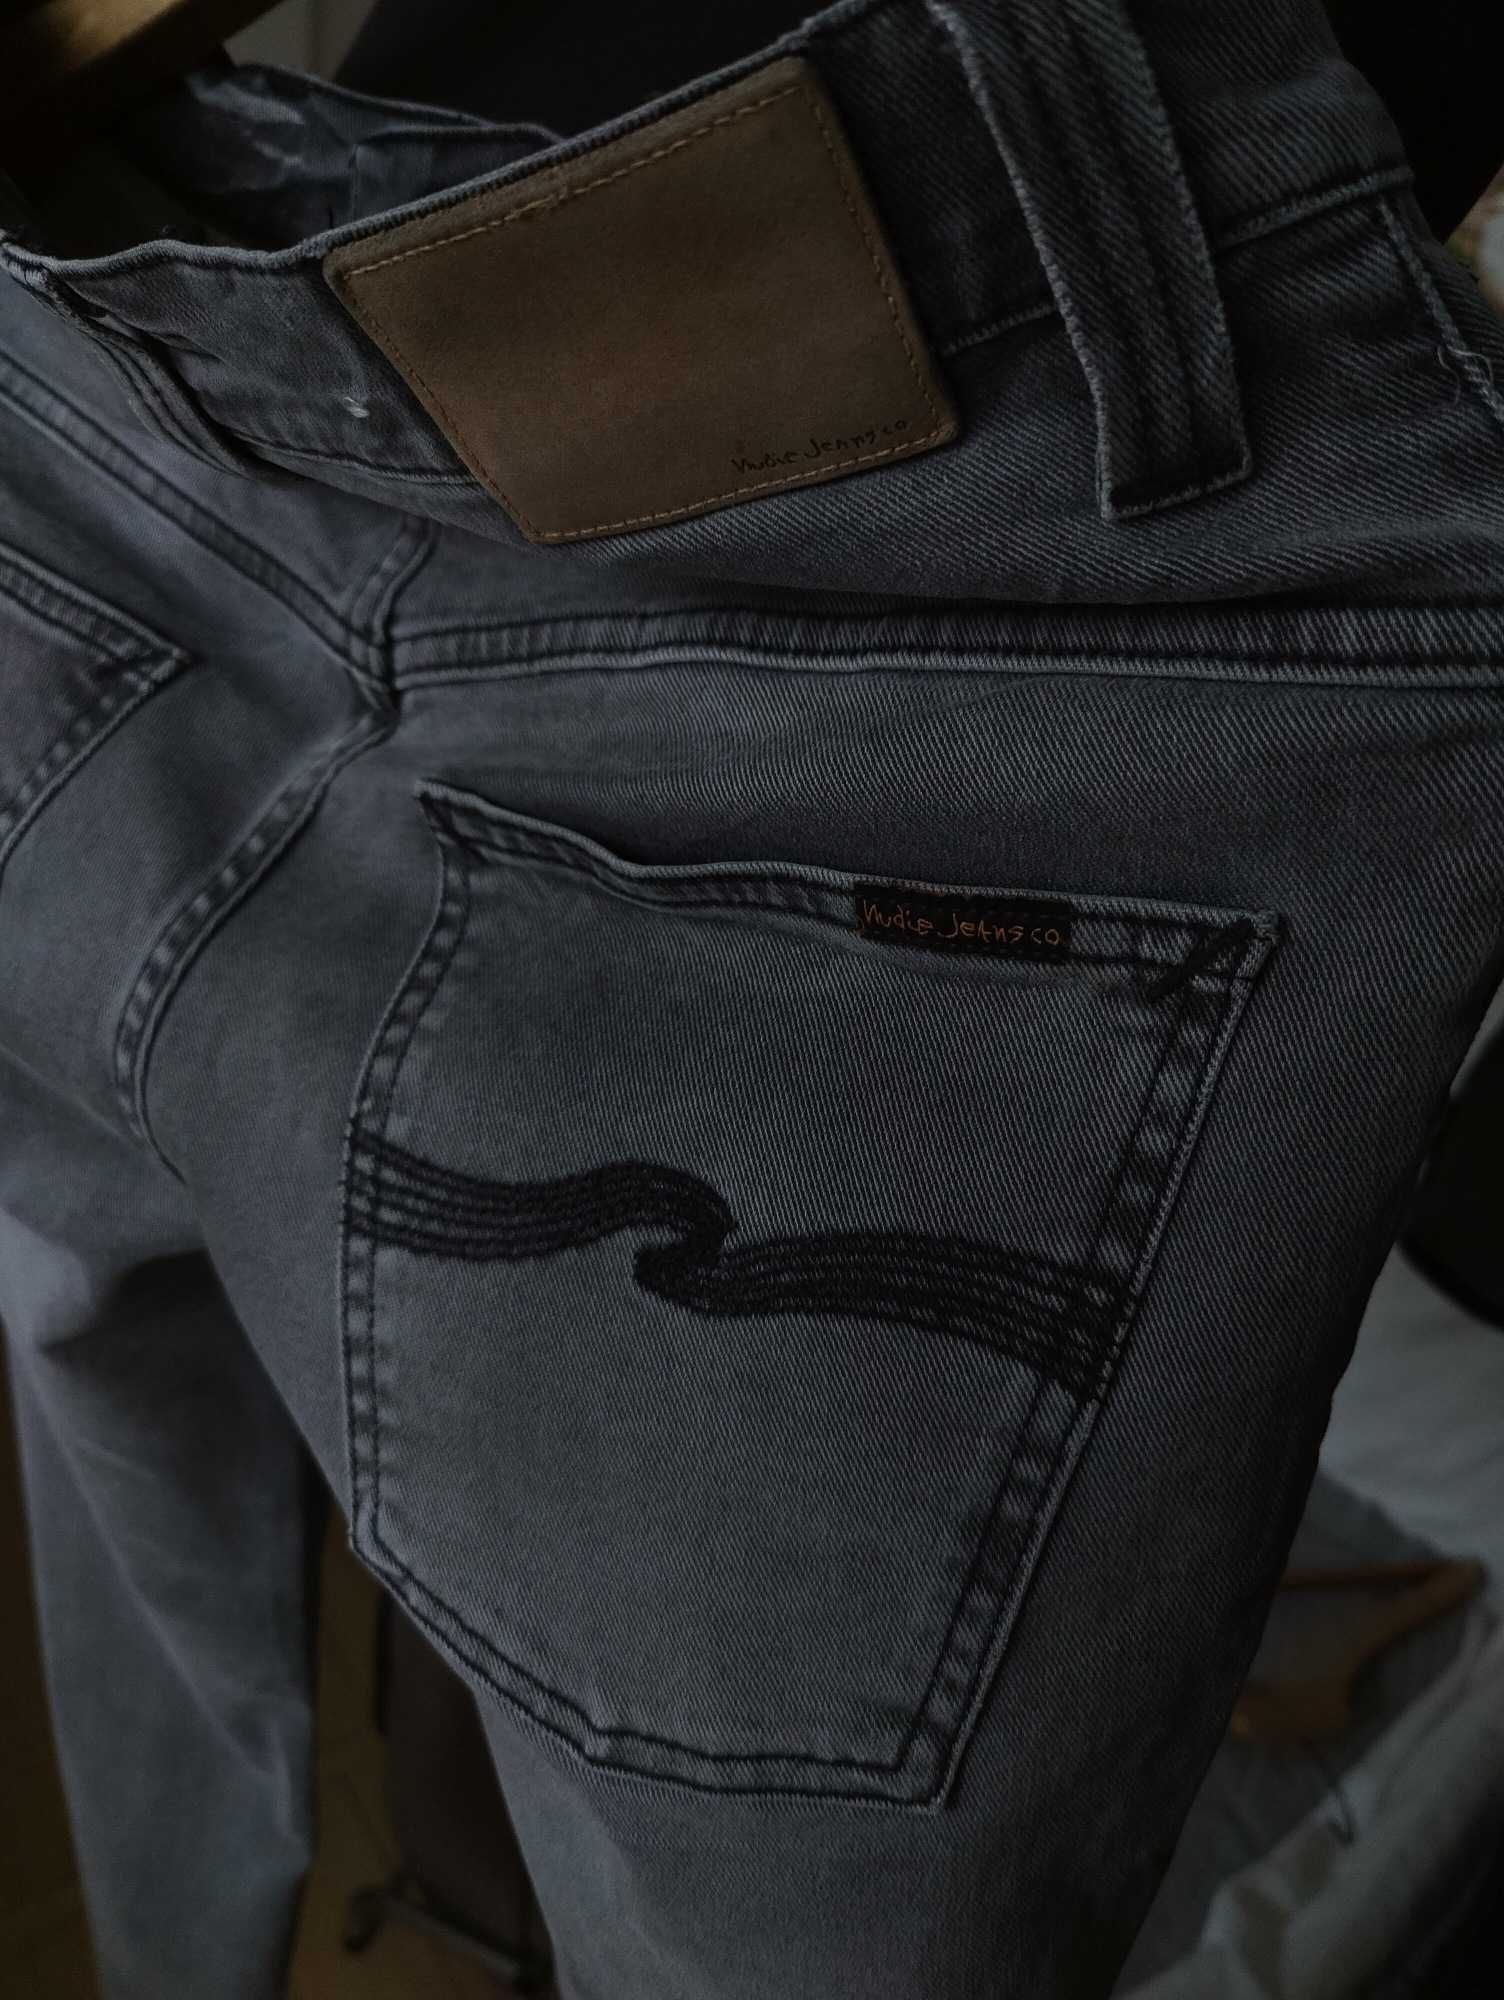 Джинсы Nudie jeans Thin Finn Italy w31 stretch grey.